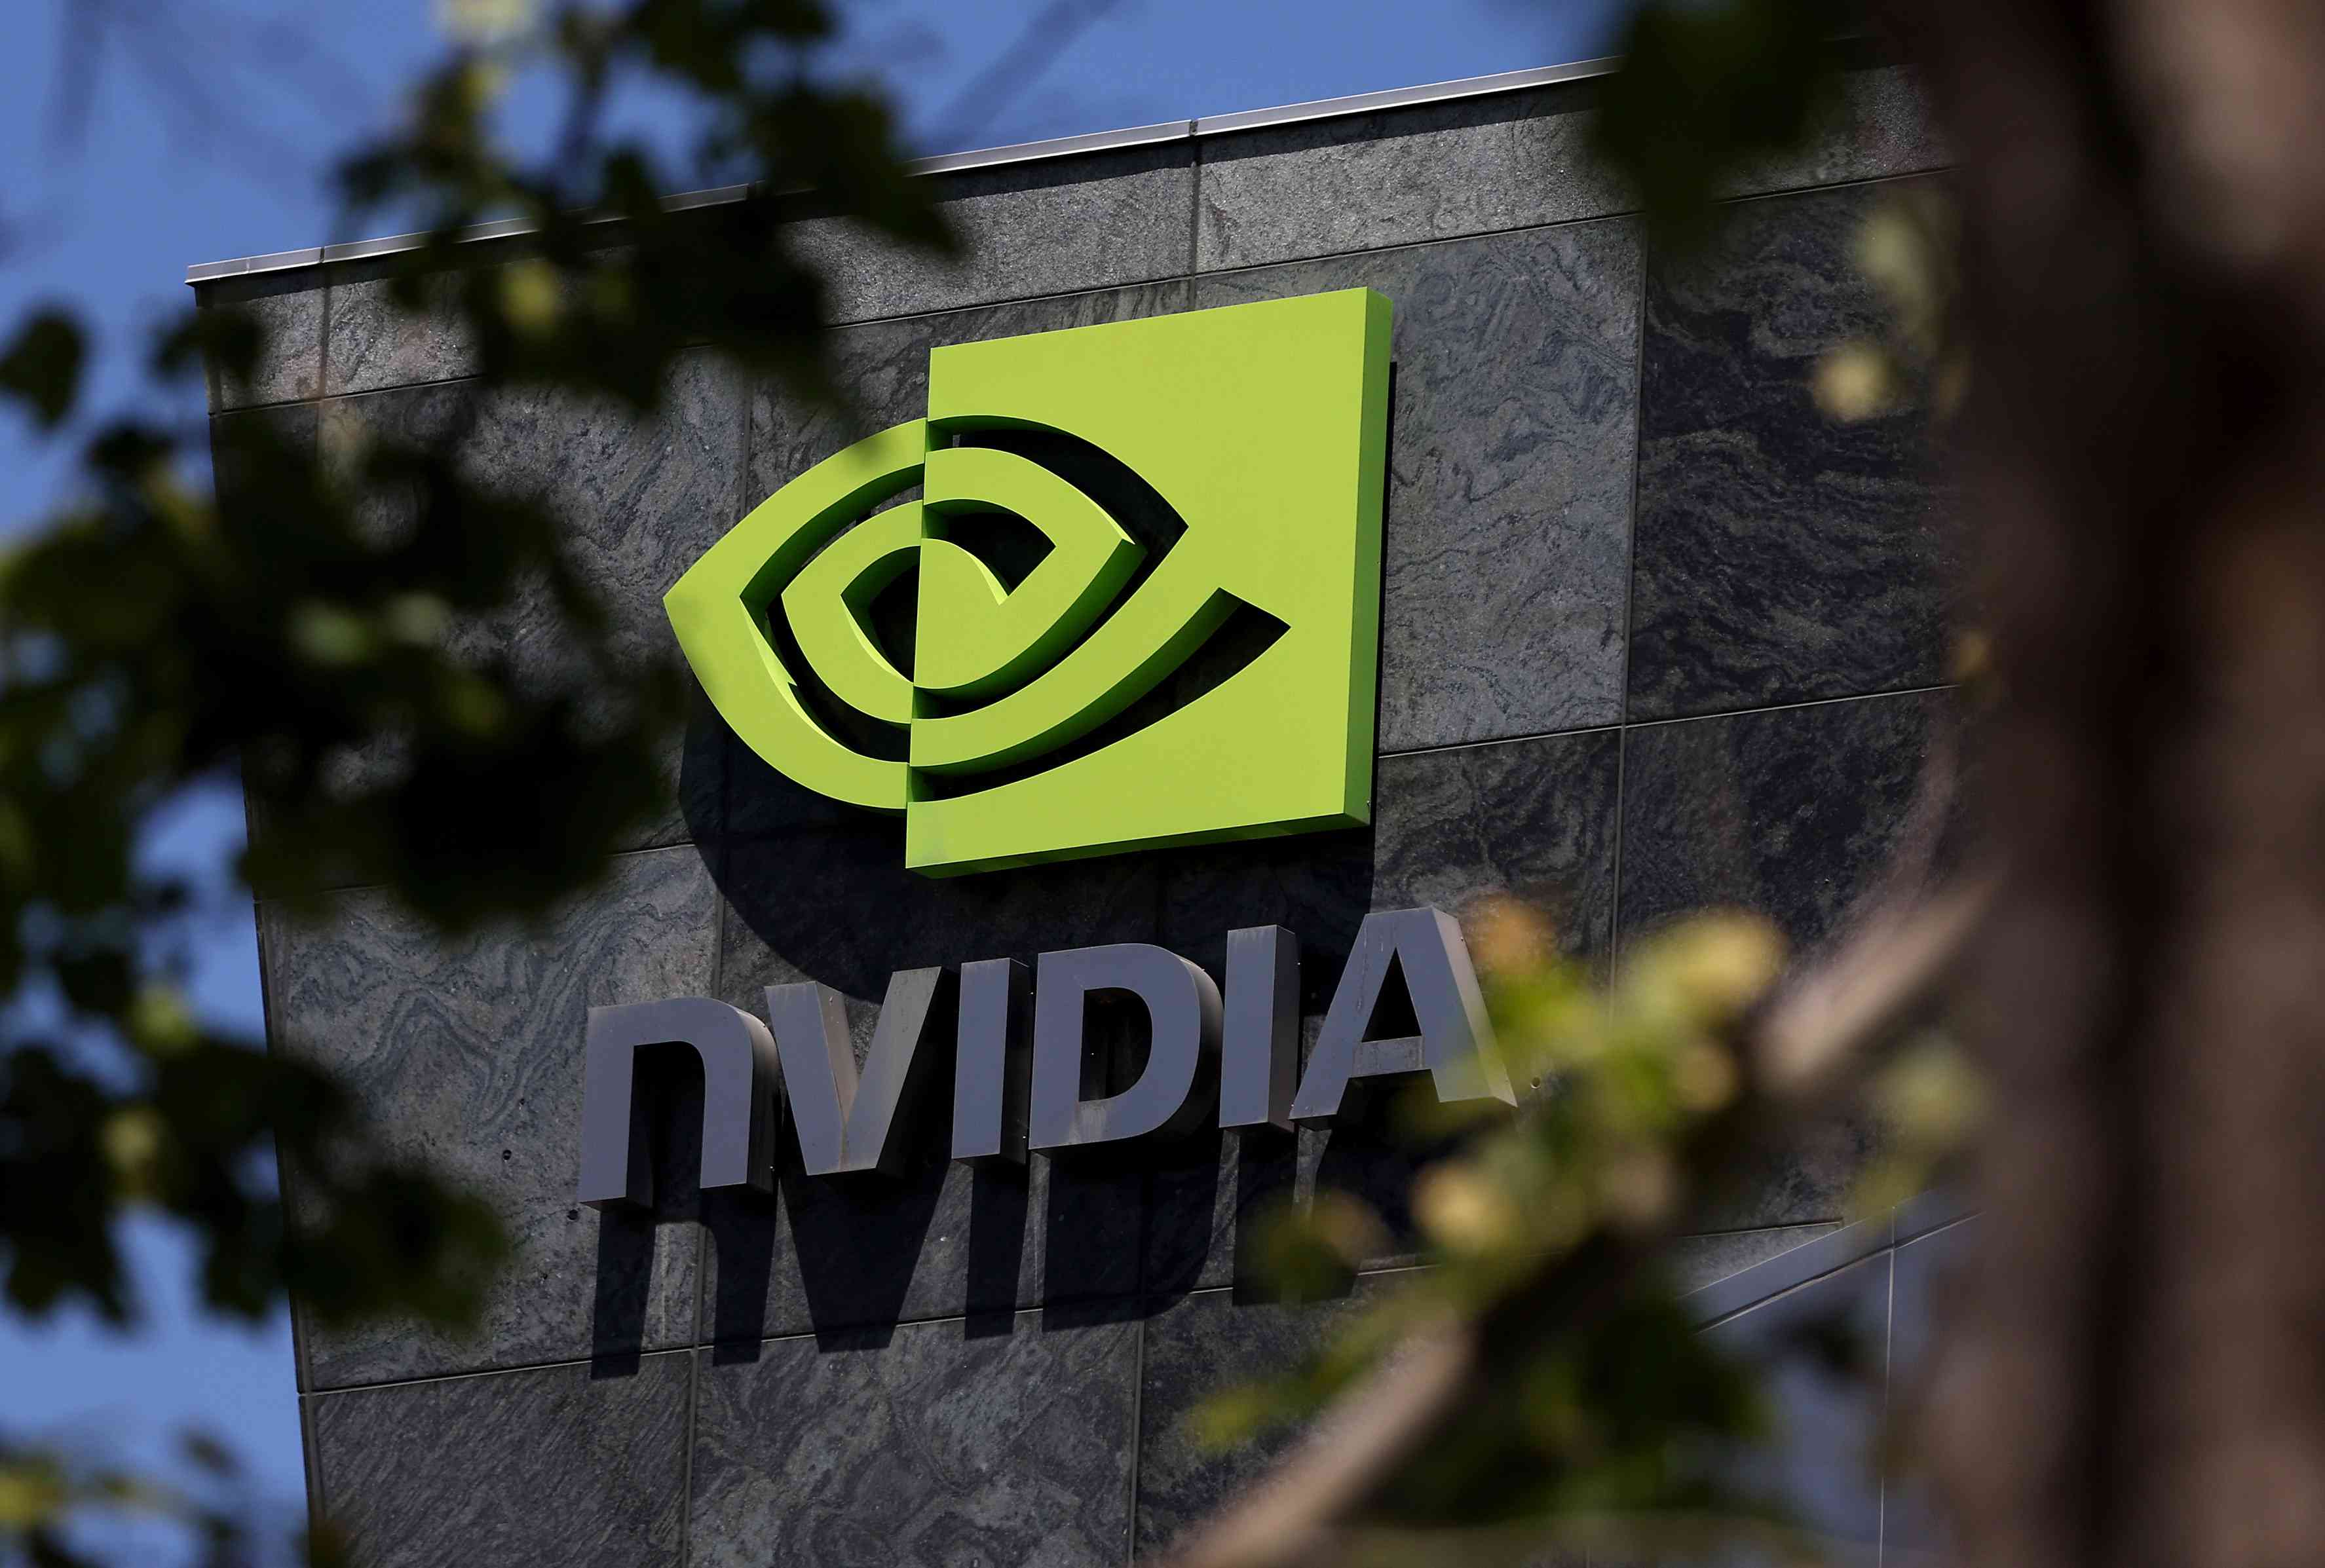 The Nvidia logo on display at the company's headquarters.